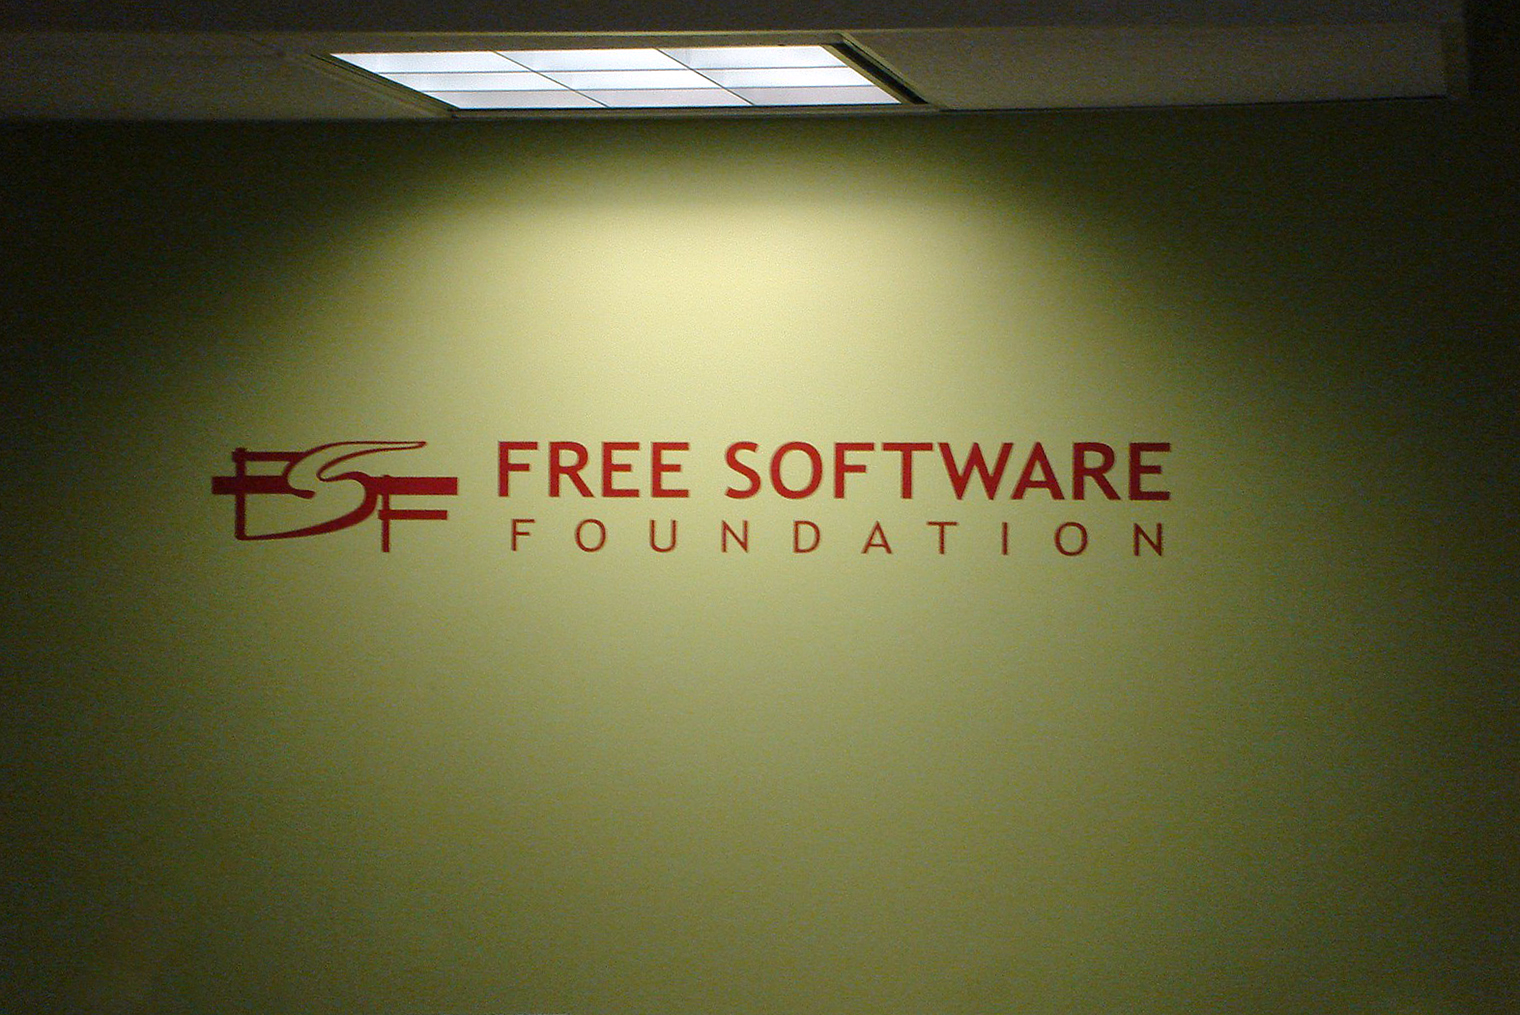 Логотип в офисе Free Software Foundation. Организация продолжает работу и в наши дни. Источник: Wikimedia Commons